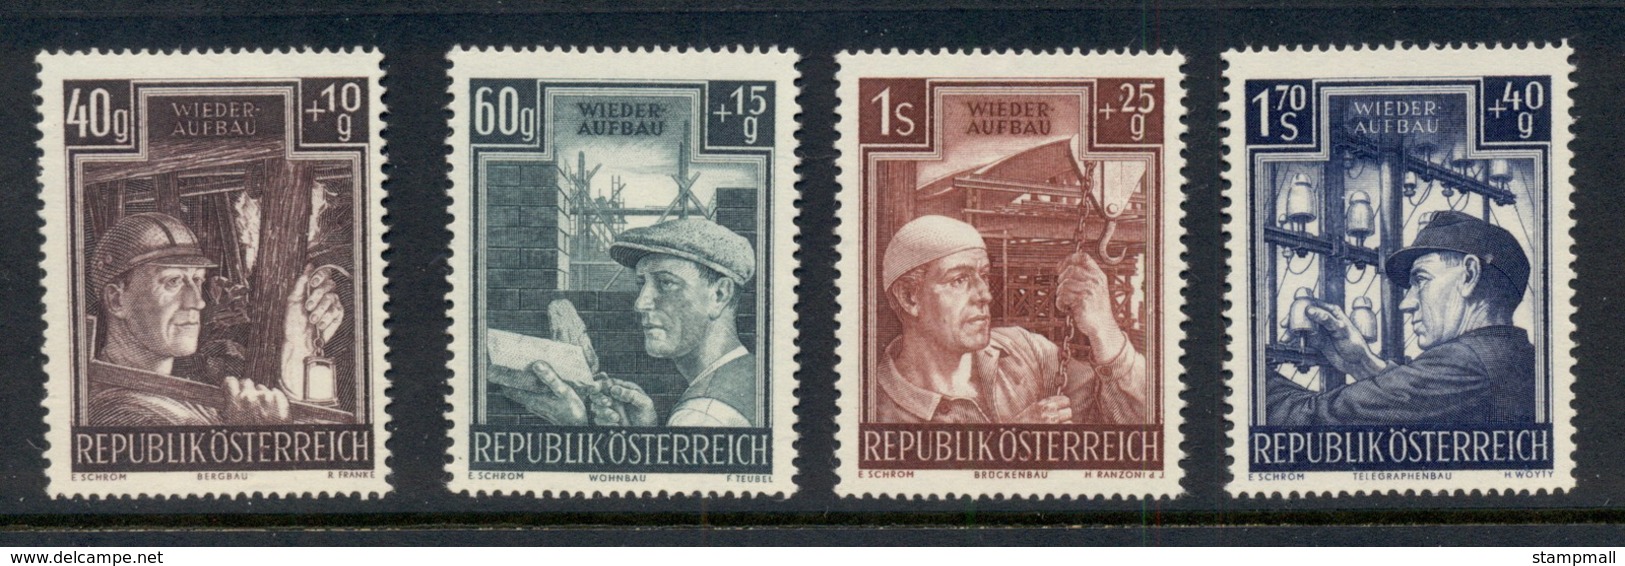 Austria 1951 Austrian Reconstruction MUH - Unused Stamps